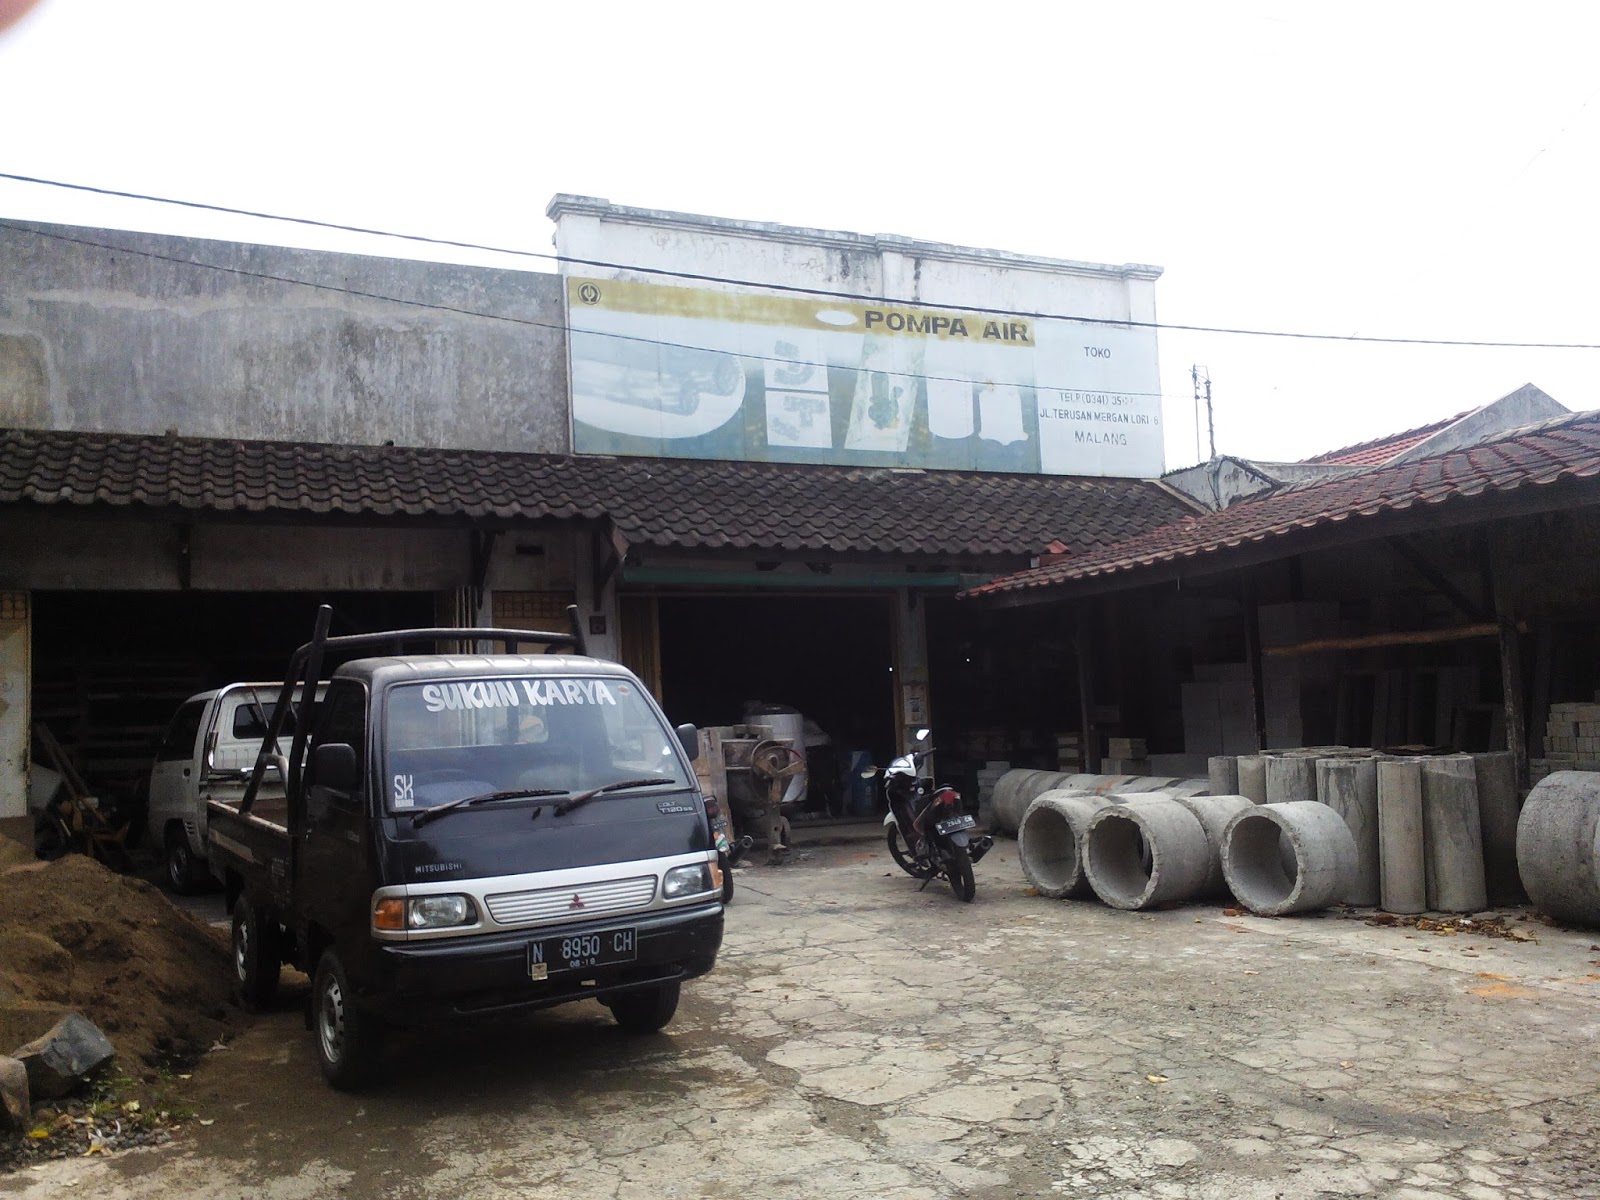 Jasa Renovasi Rumah Di Malang